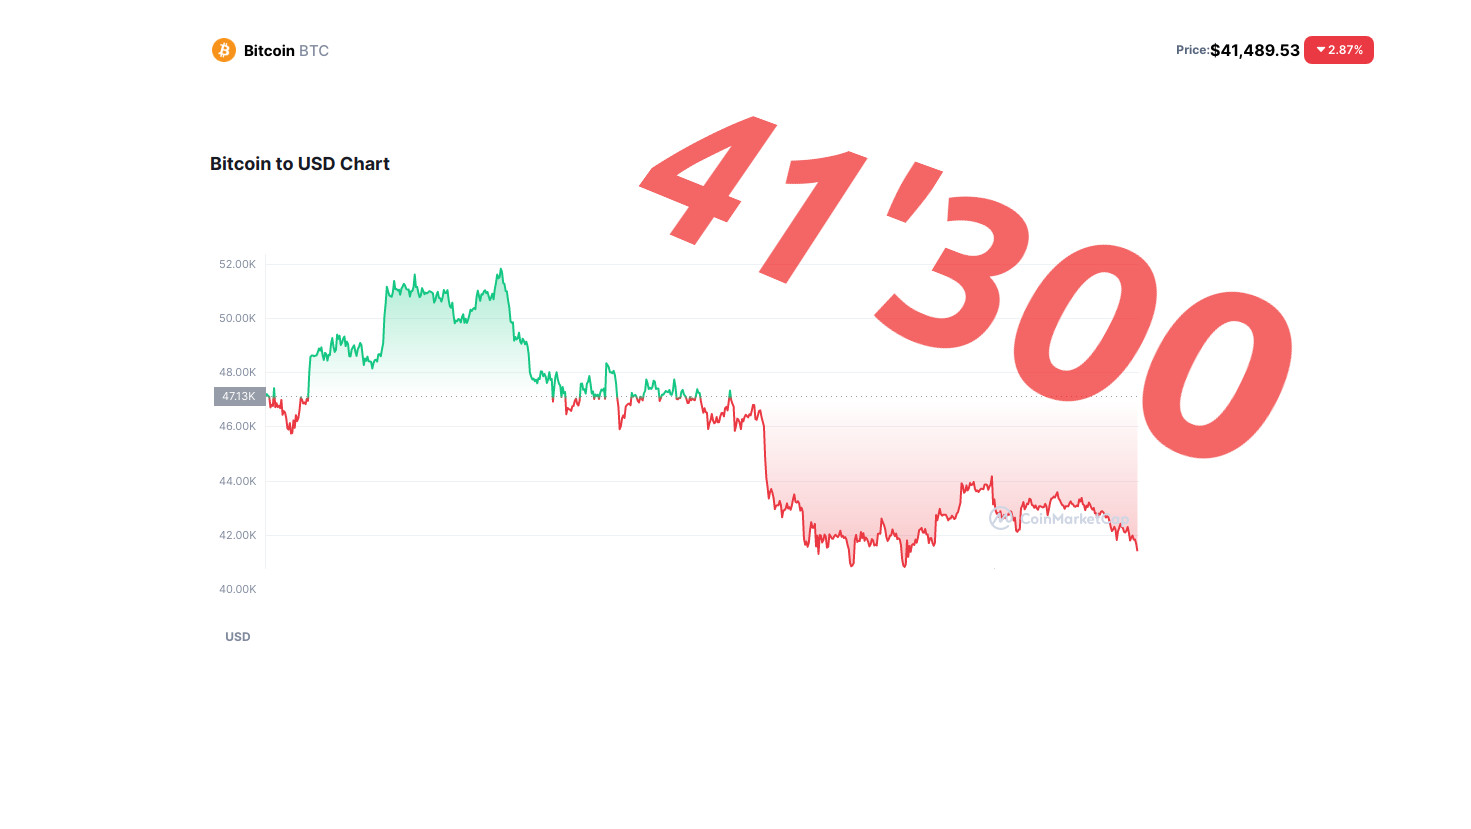 Bitcoin-Preis Crash: 41’300